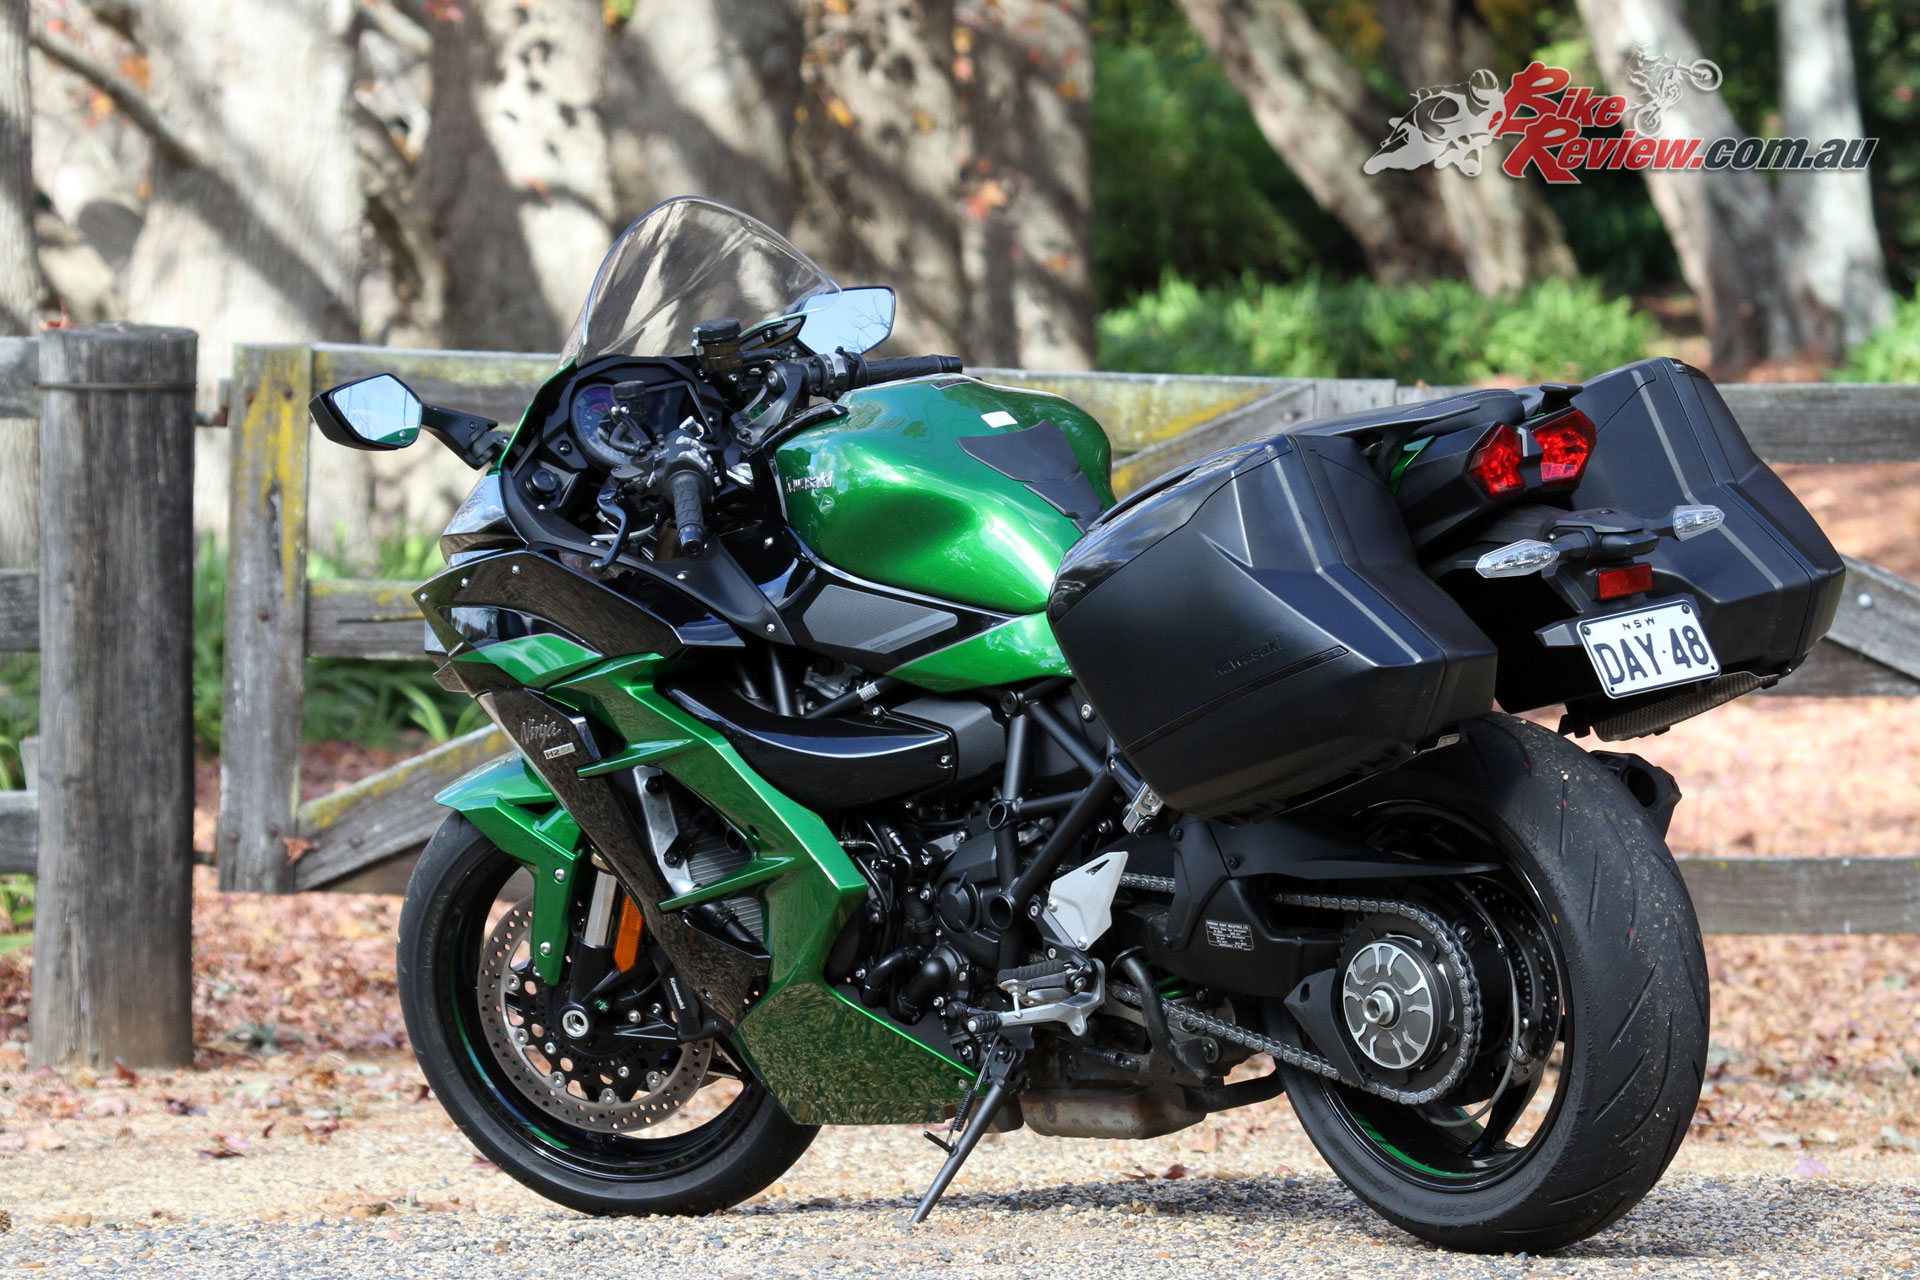 Review: Kawasaki Ninja H2 SX SE - Bike Review